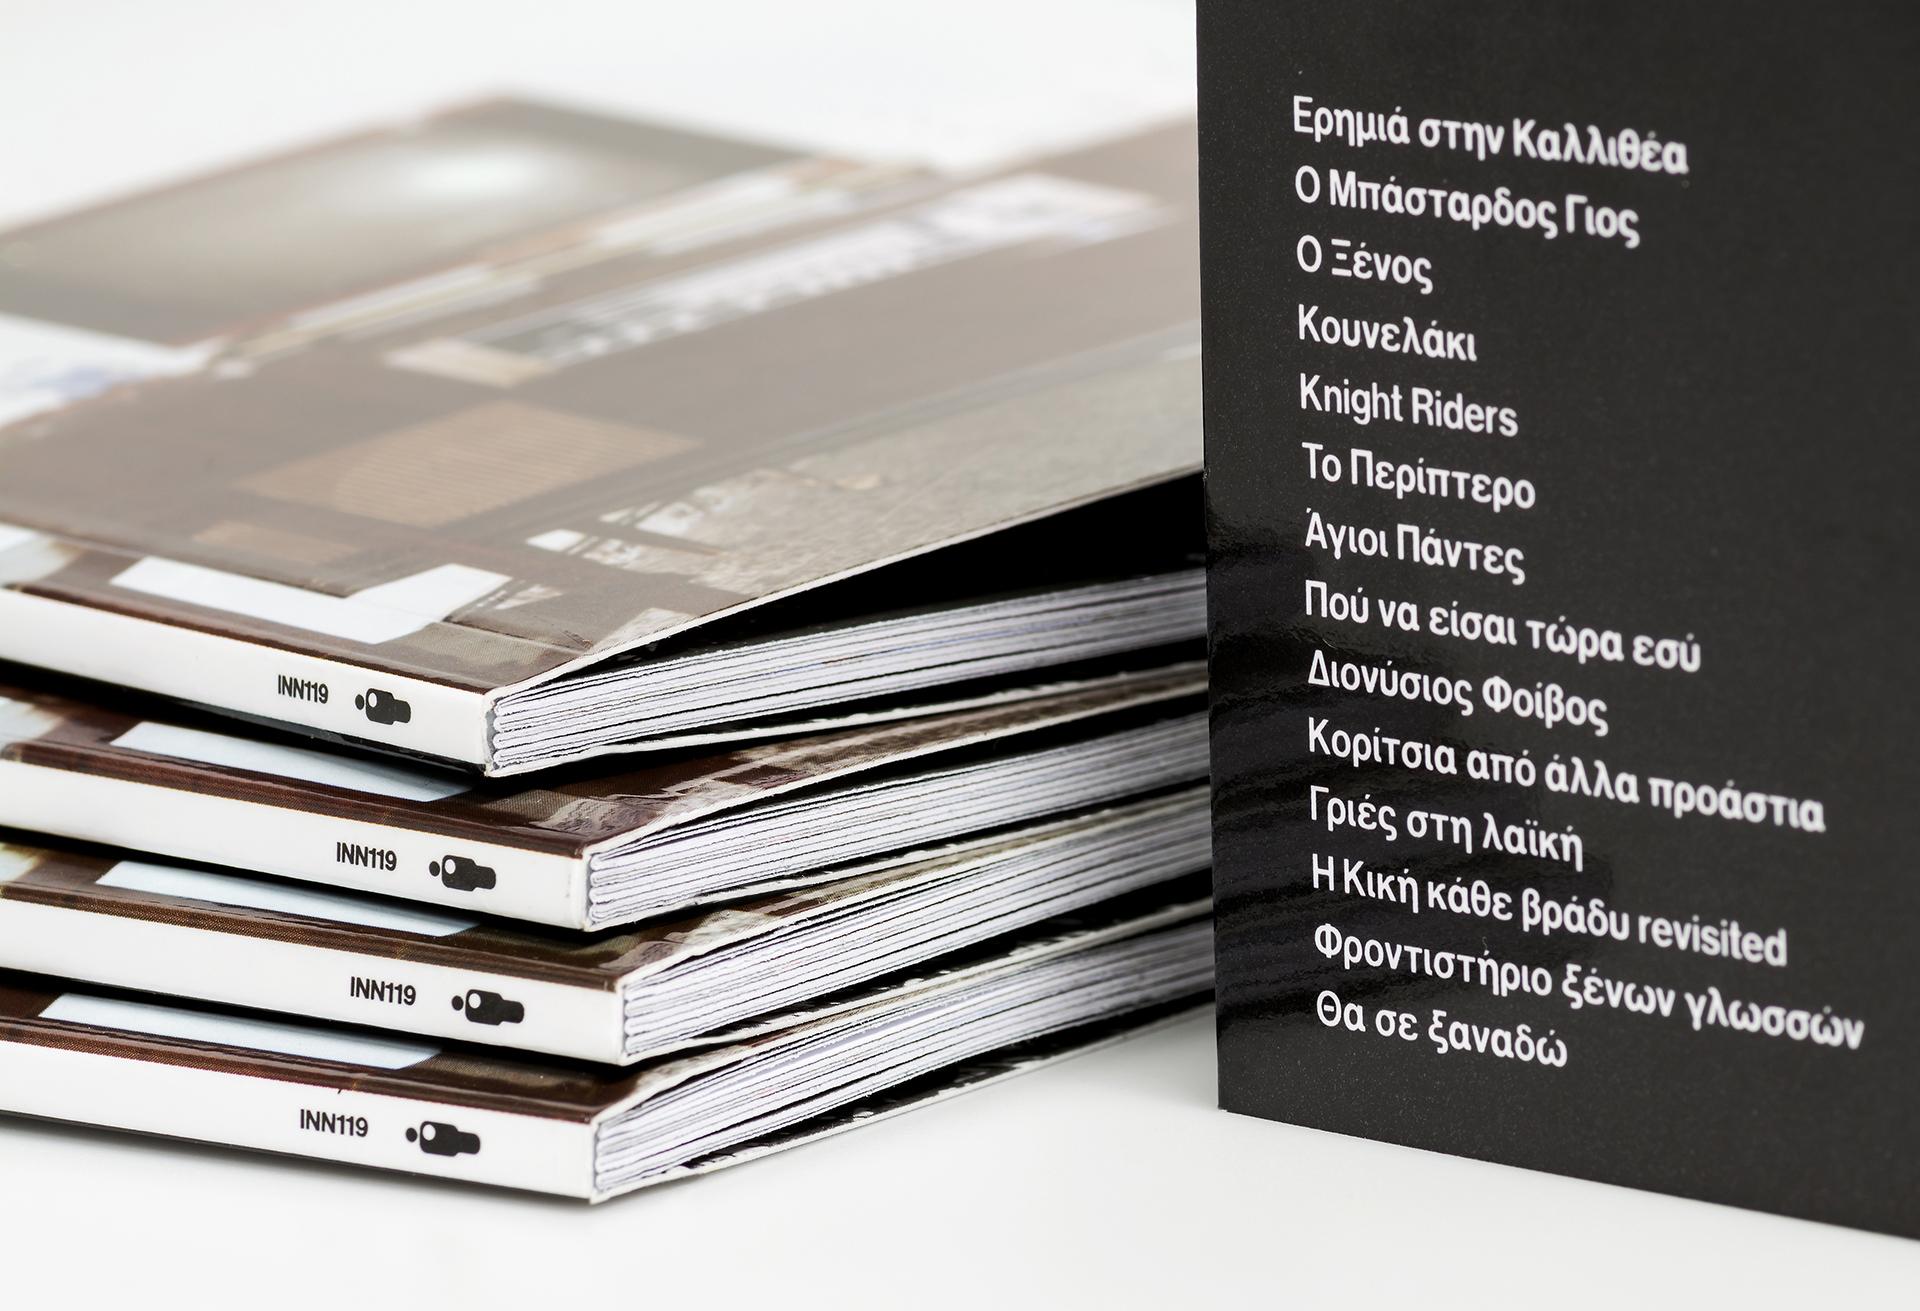 Fivos Delivorias - Kallithea CD covers